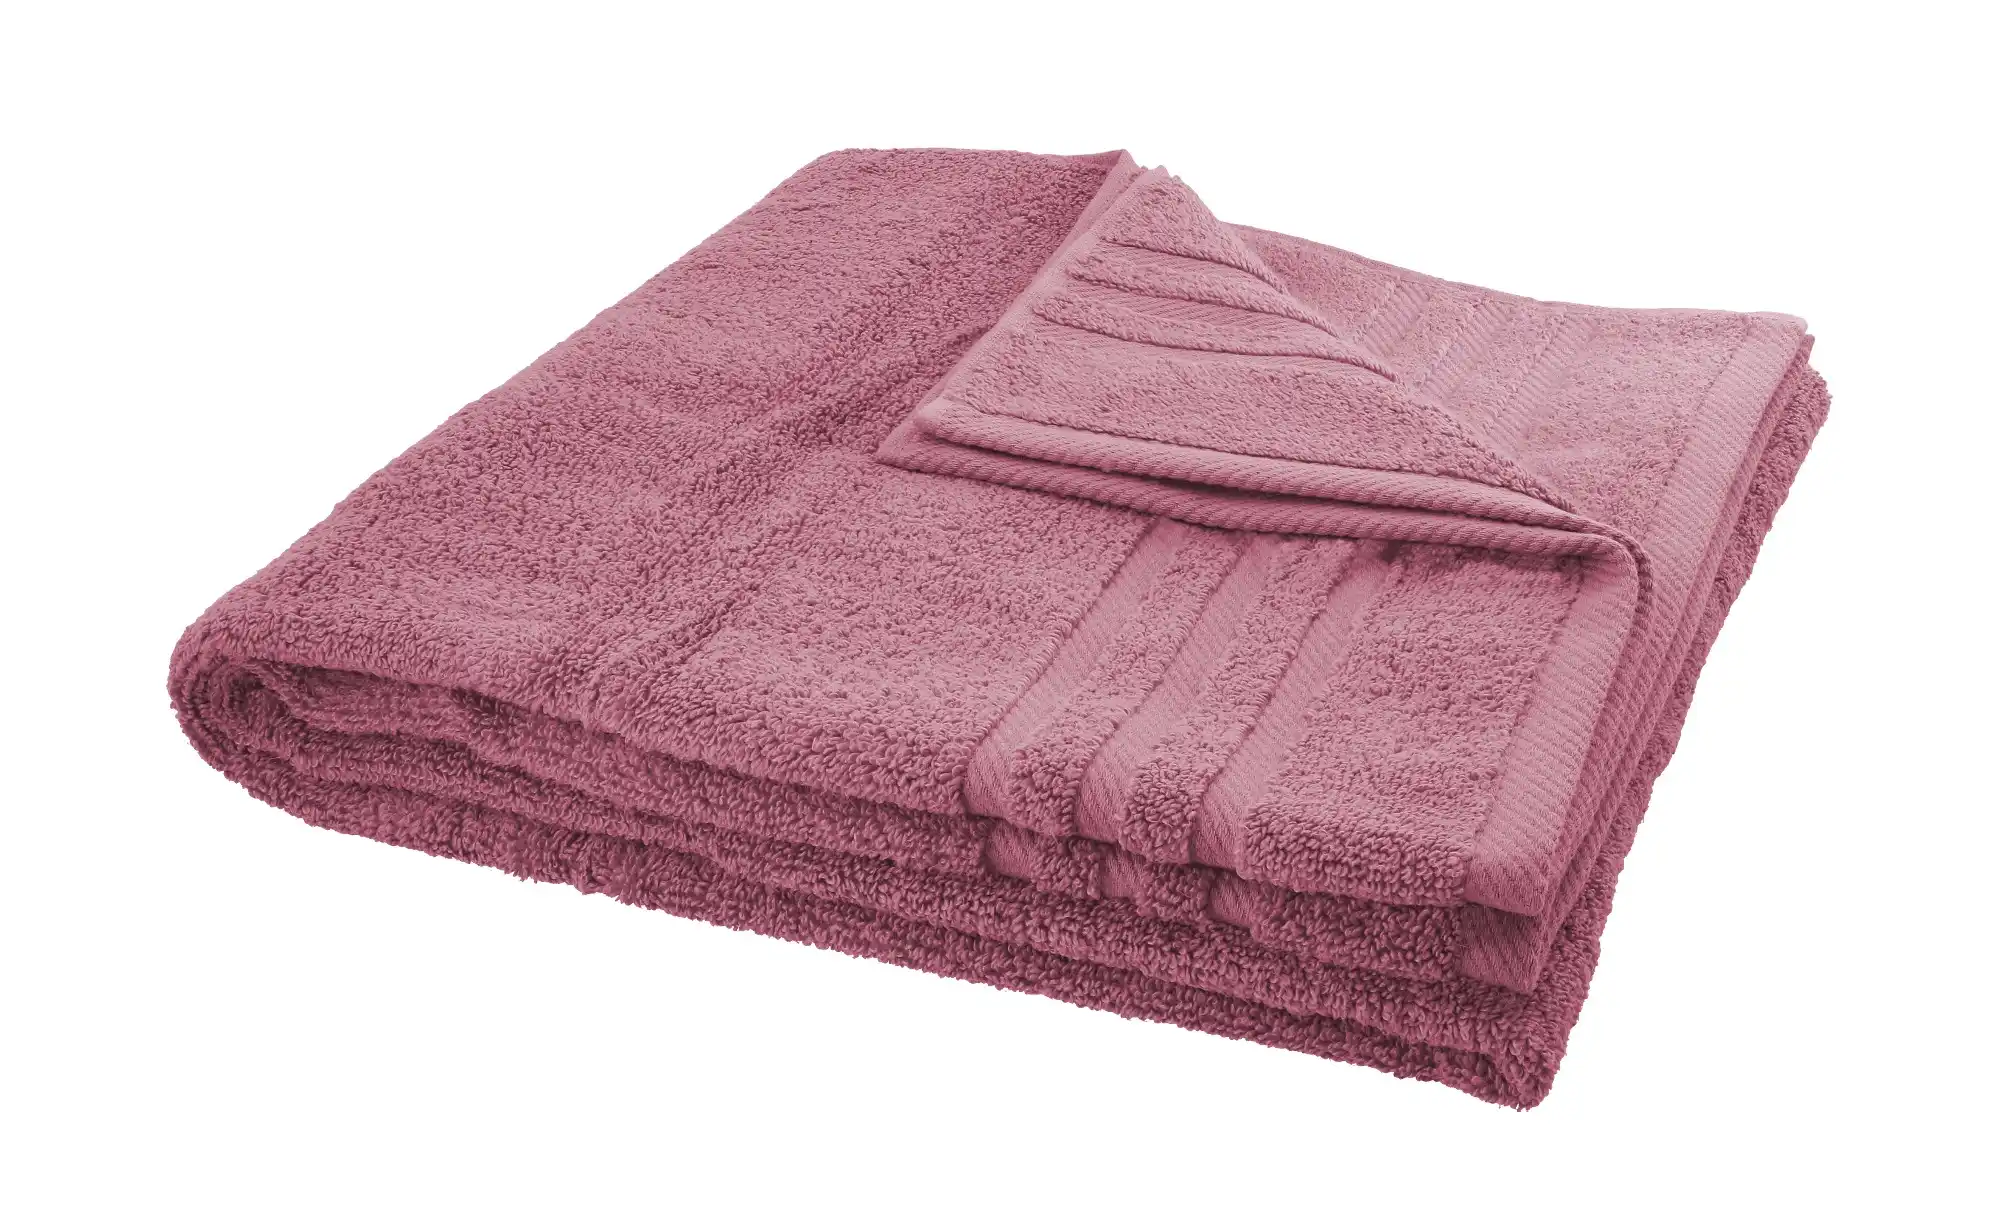 LAVIDA Duschtuch Soft Cotton ¦ lila violett ¦ reine Micro Baumwolle, Baumwolle Badtextilien und Zubehör Handtücher Badetücher Handtücher Höffner  - Onlineshop Möbel Höffner